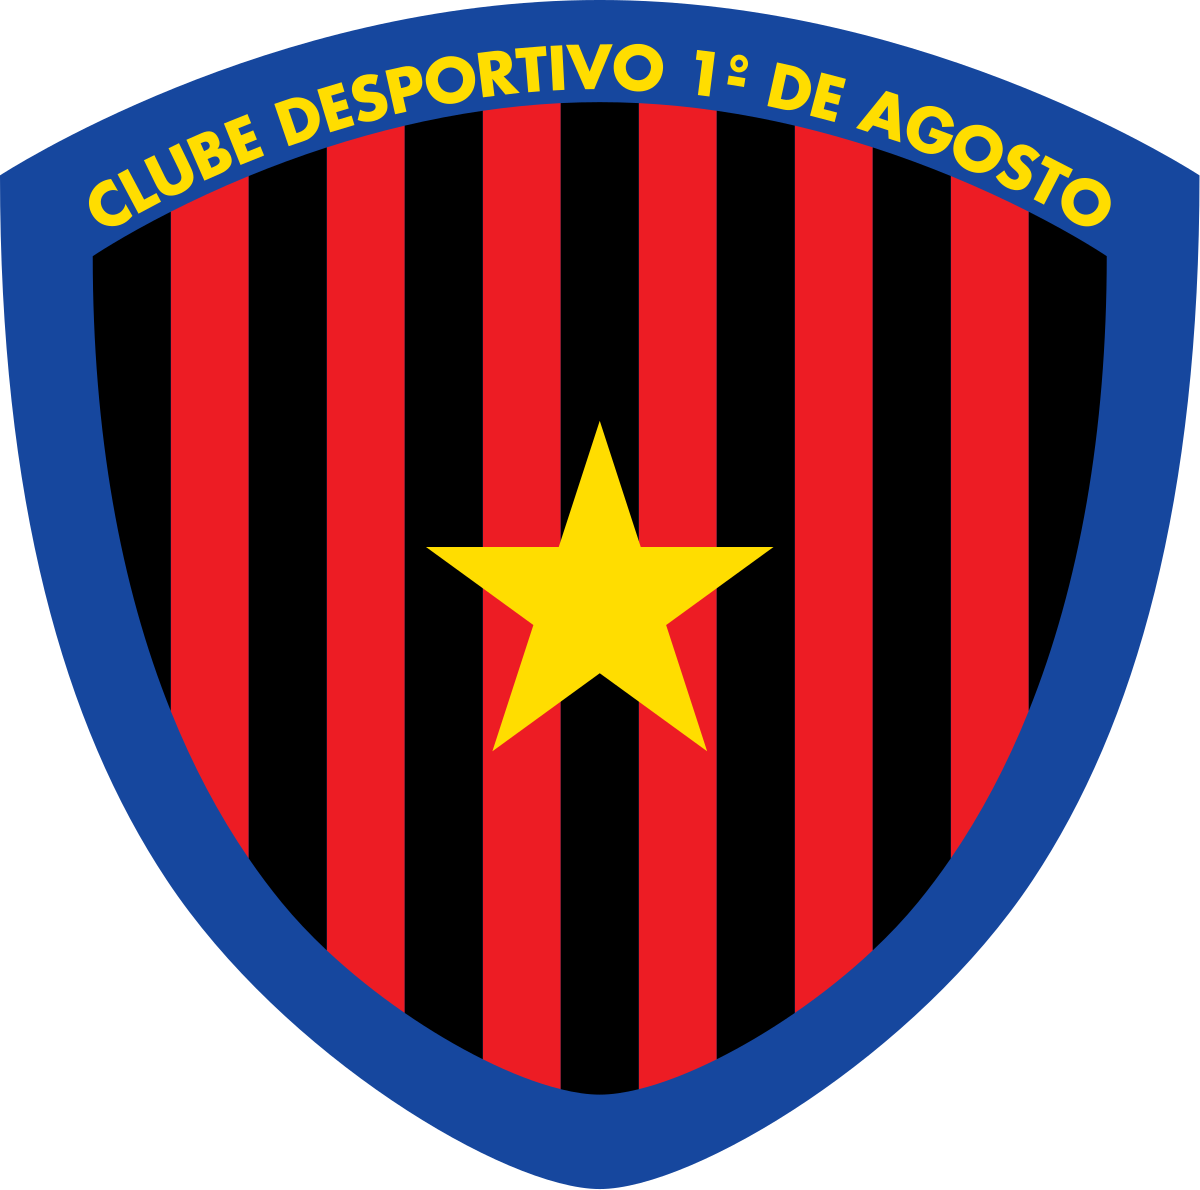 Clube Desportivo 1º de Agosto - ⚽ 11 Inicial ⚽